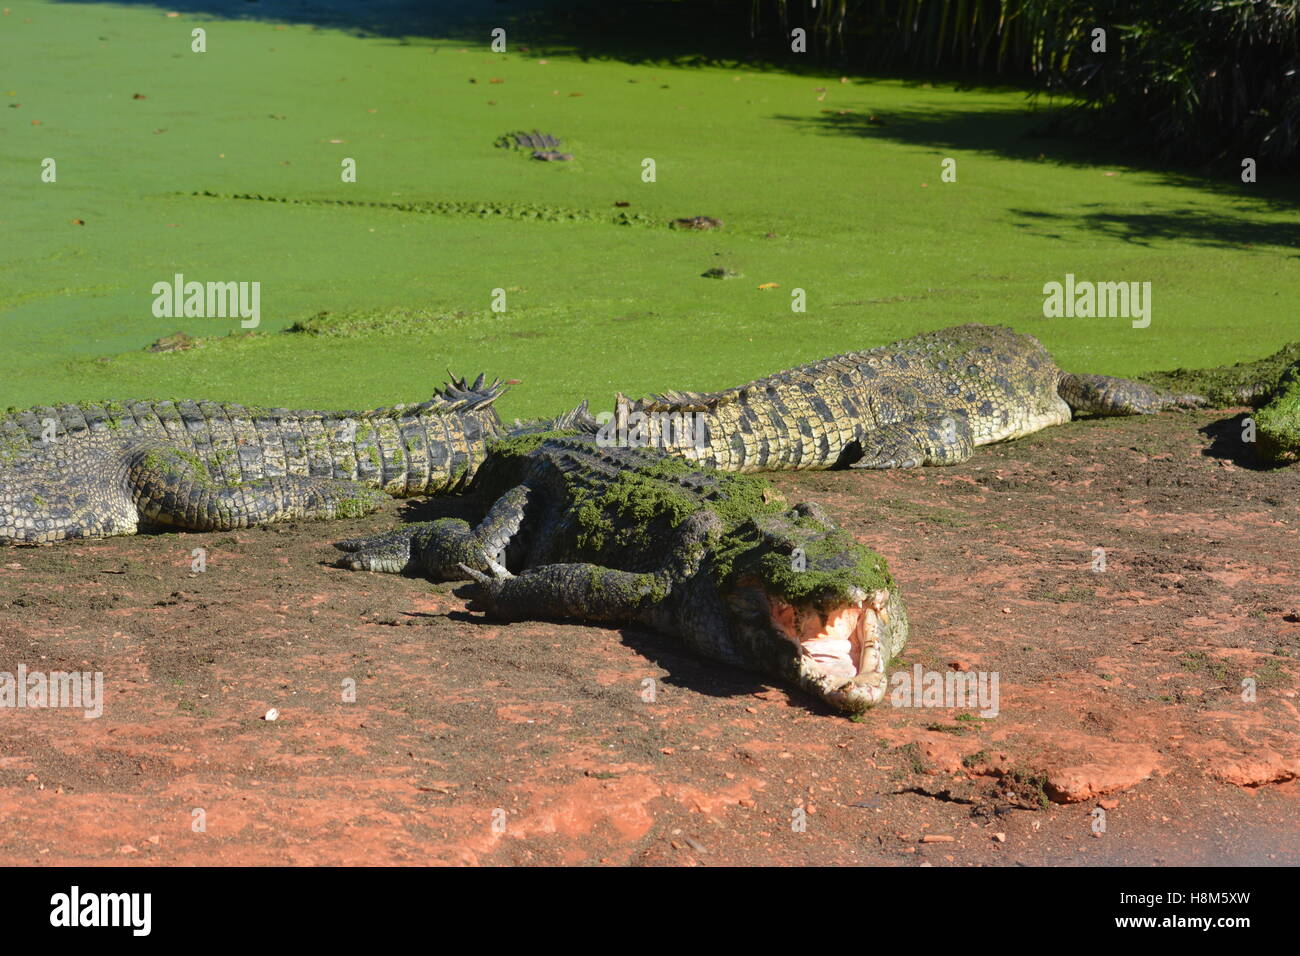 En Crocodile prêt à être nourris Broome, Australie Banque D'Images